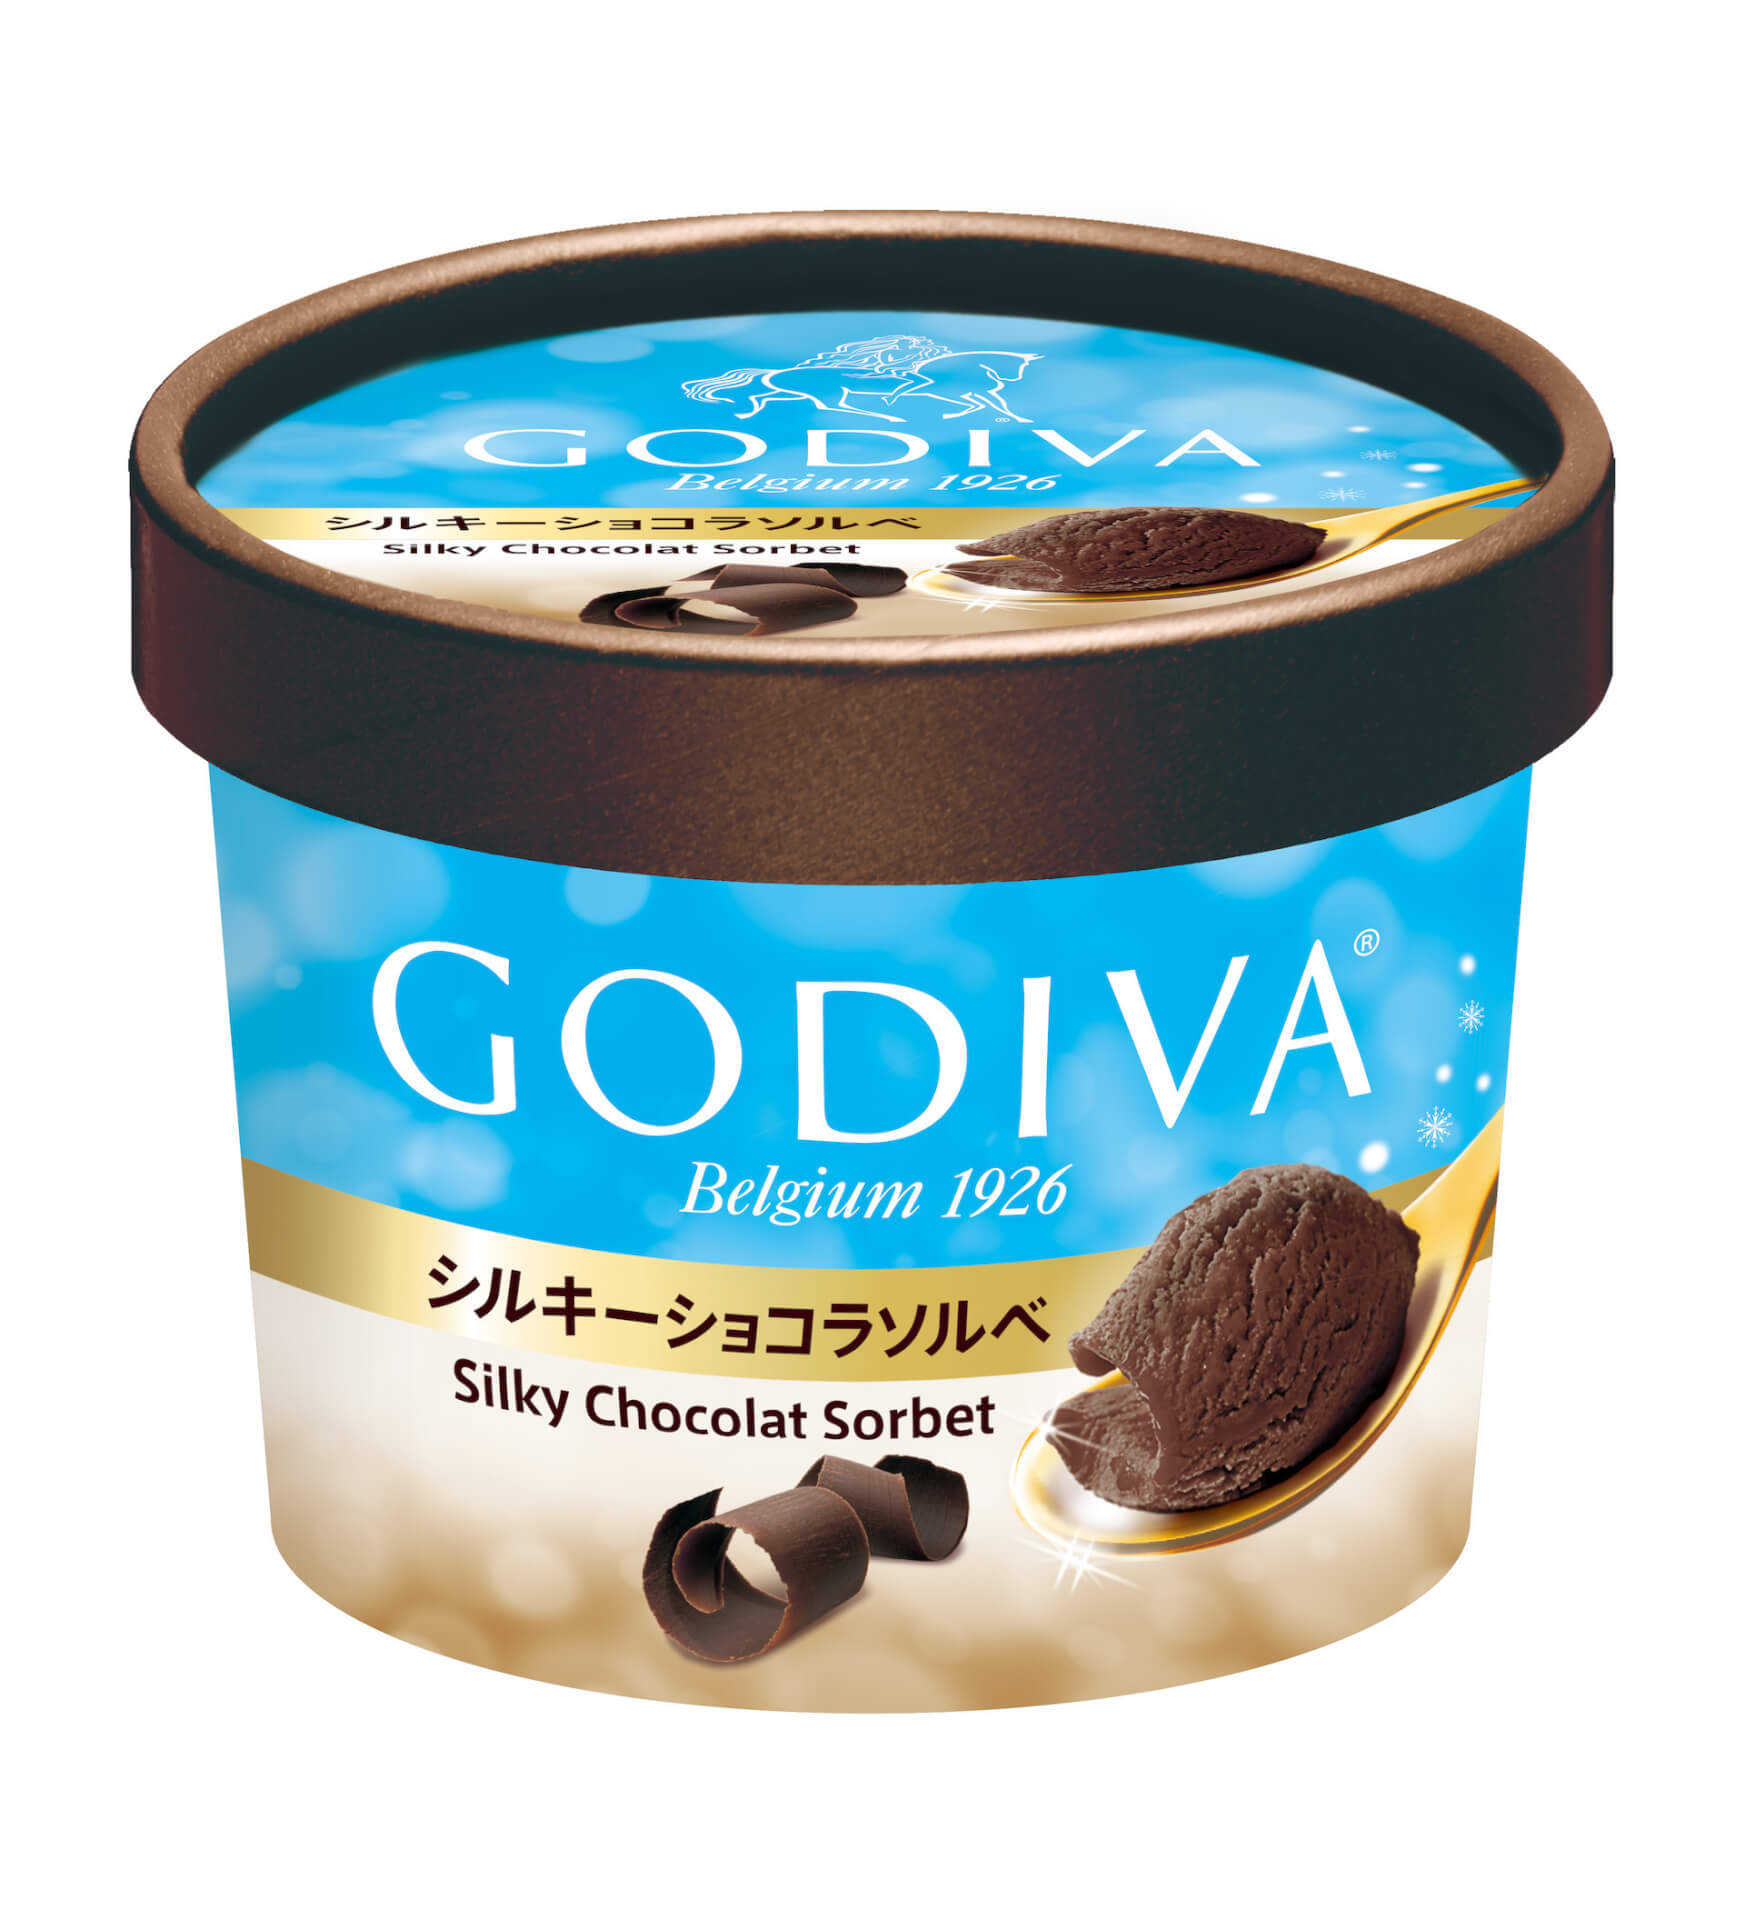 ゴディバのカップアイスに新フレーバー「シルキーショコラソルベ」が数量限定で登場！ gourmet210615_godiva_icecream_1